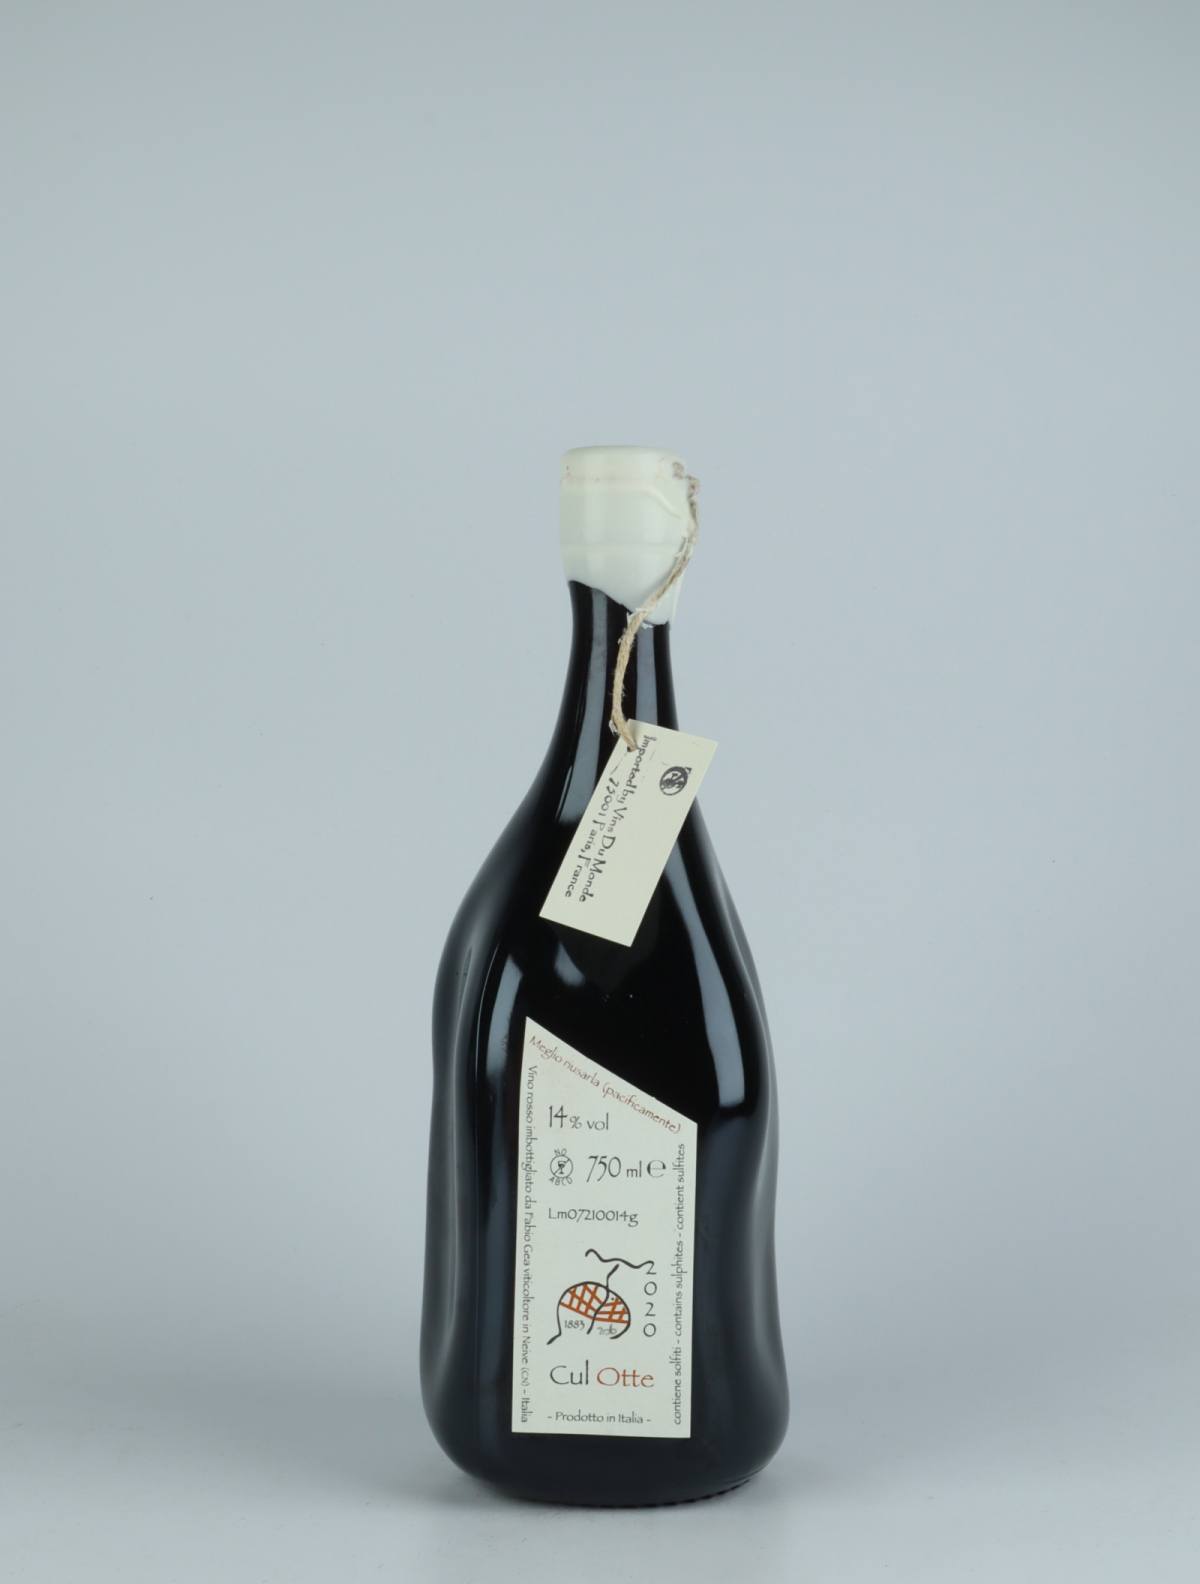 En flaske 2020 Cul Otte Rødvin fra Fabio Gea, Piemonte i Italien